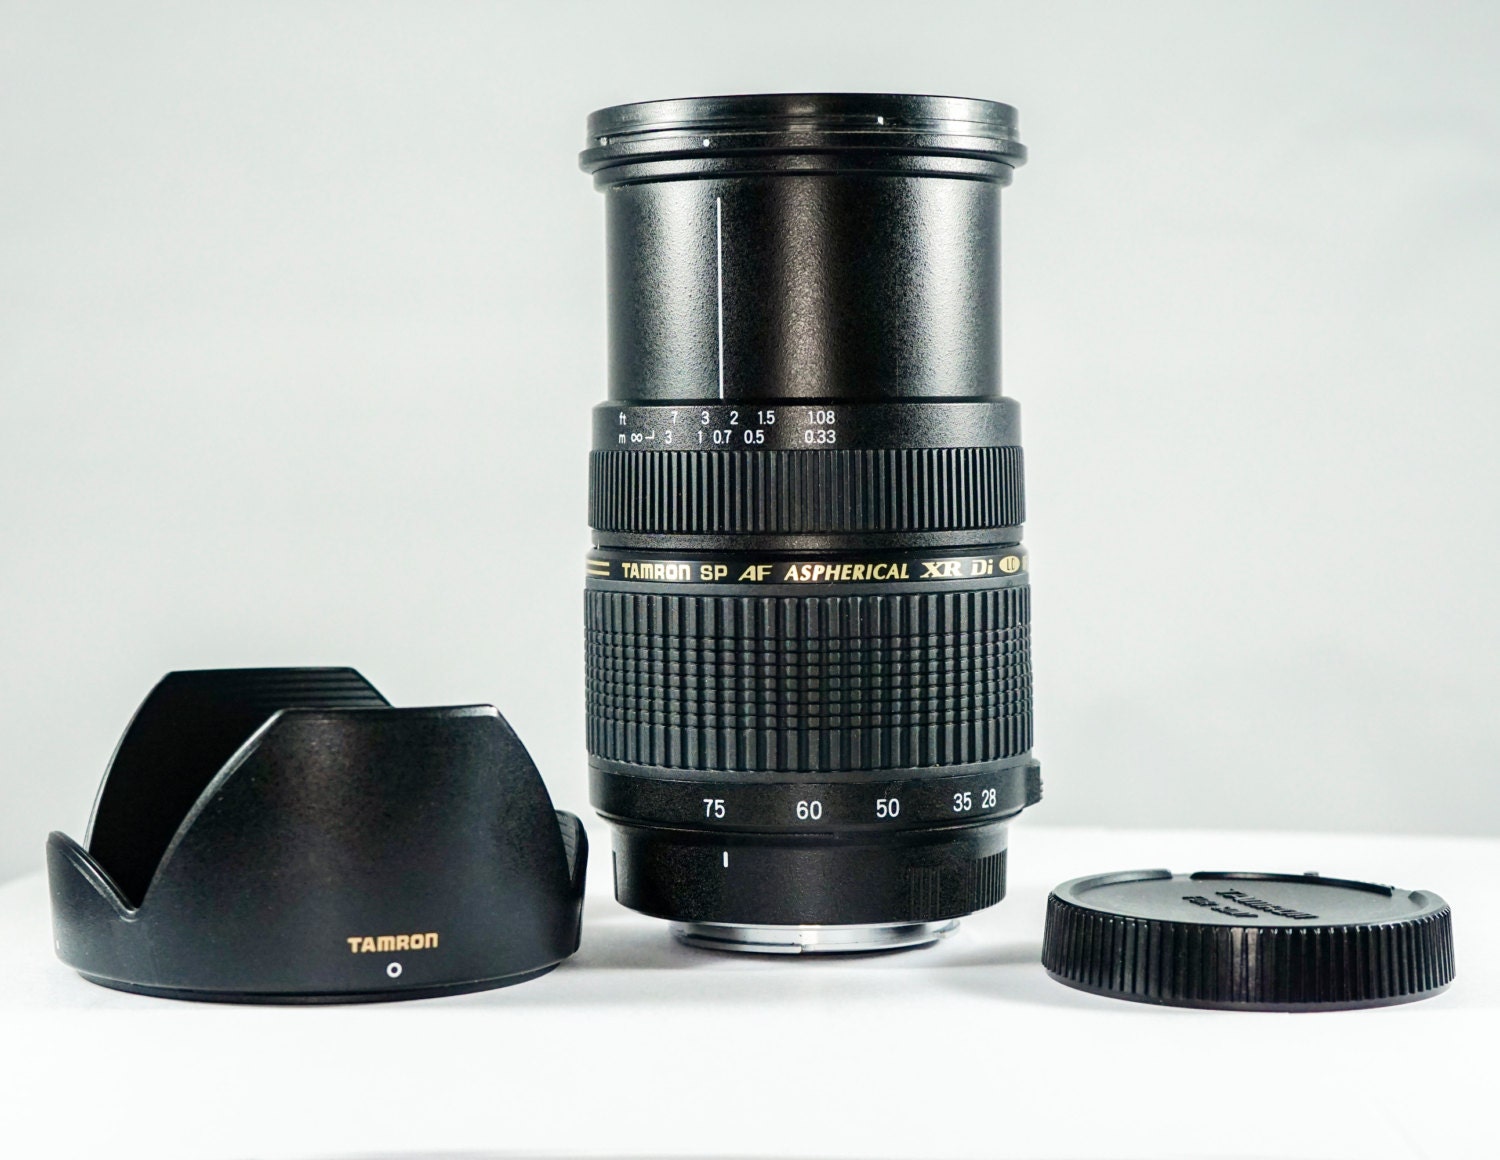 Tamron SP AF 28-75mm f/2.8 Macro Zoom Lens